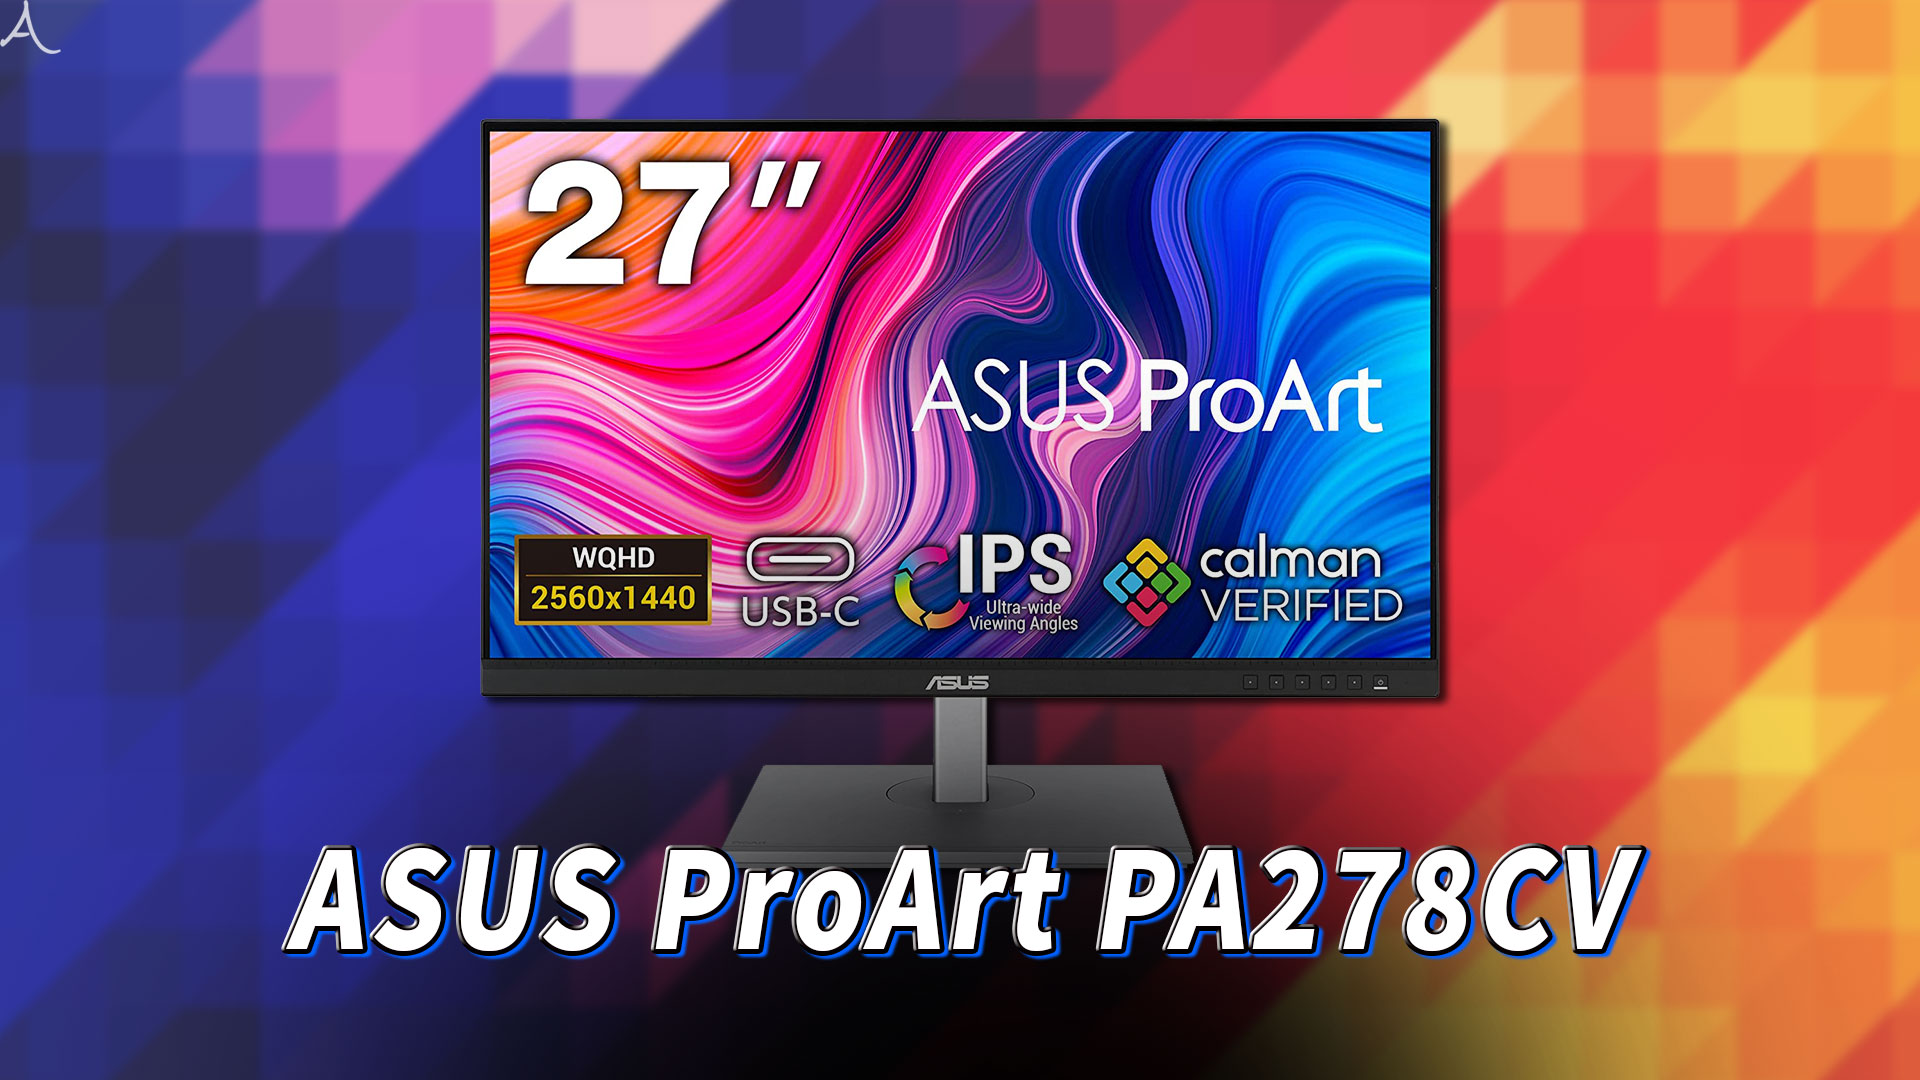 ｢ASUS ProArt PA278CV｣はスピーカーに対応してる？PCスピーカーのおすすめはどれ？